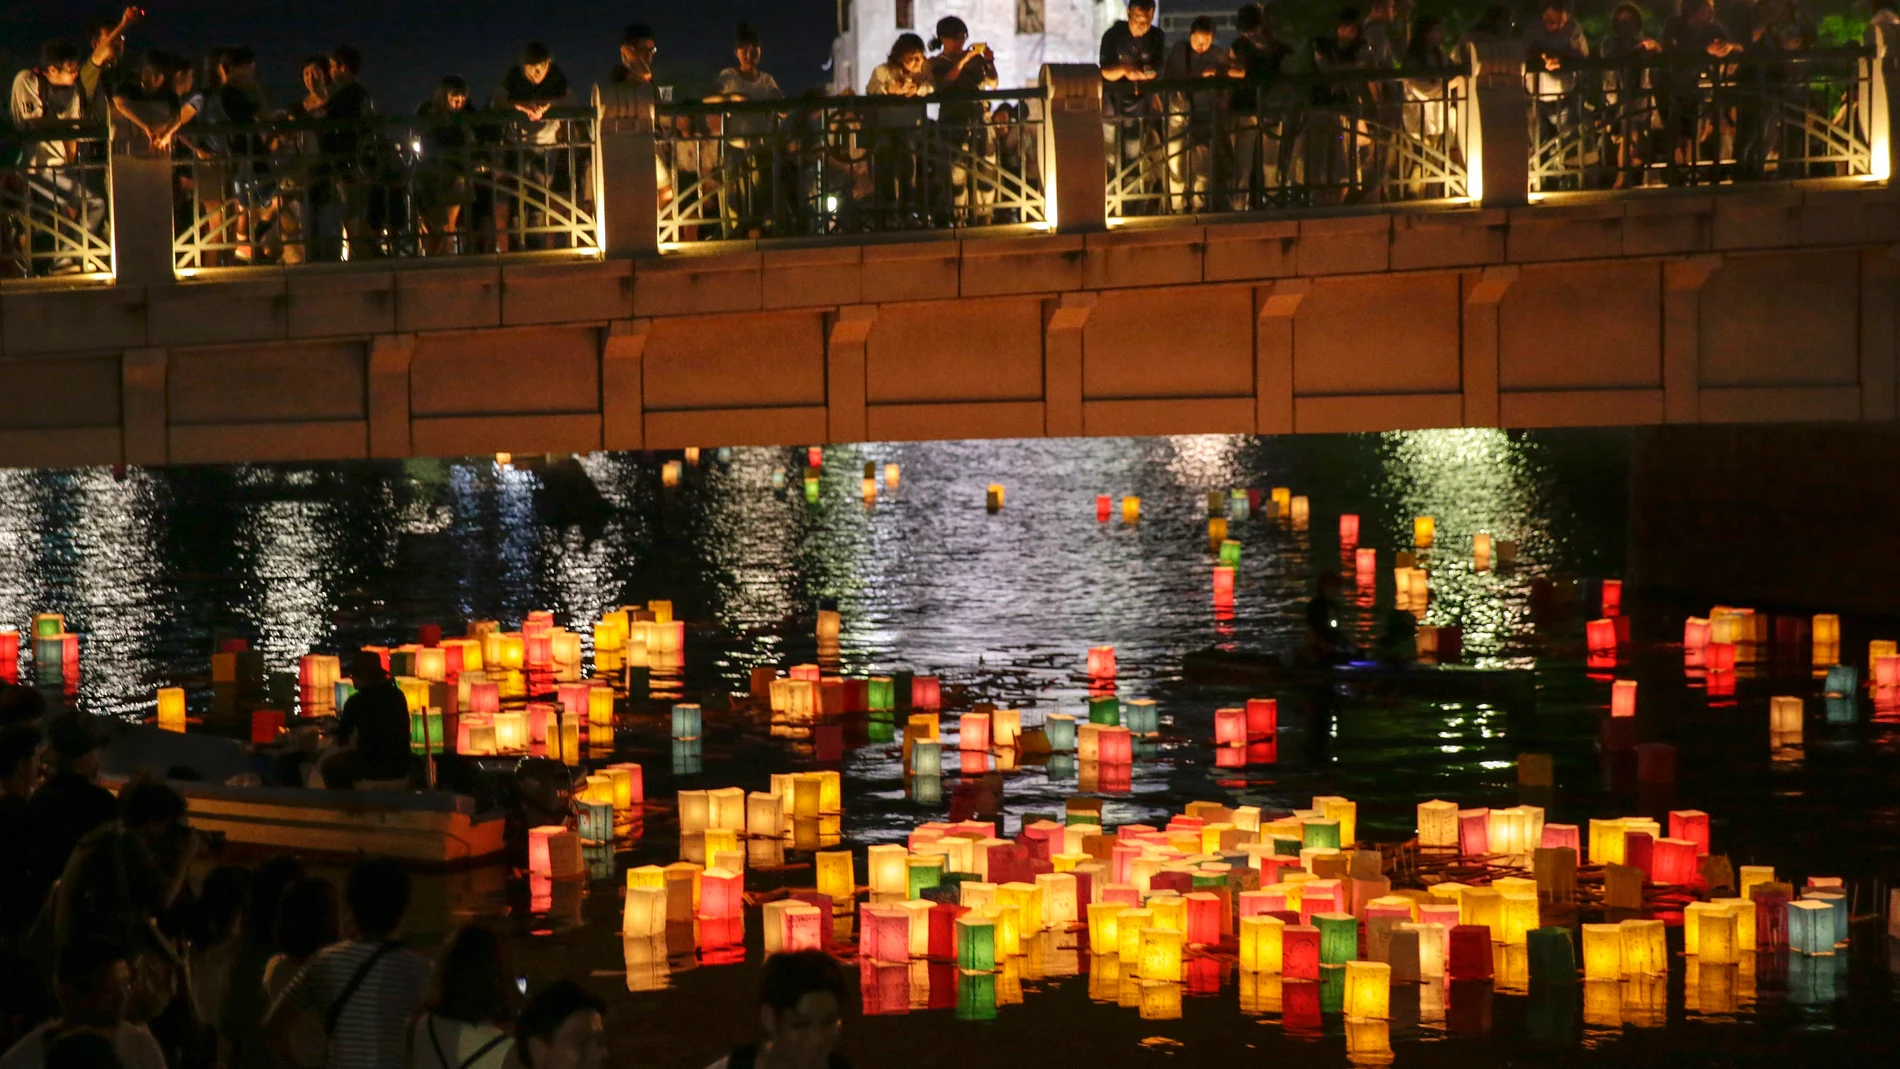 Homenaje a los 140.000 muertos por la tragedia de Hiroshima